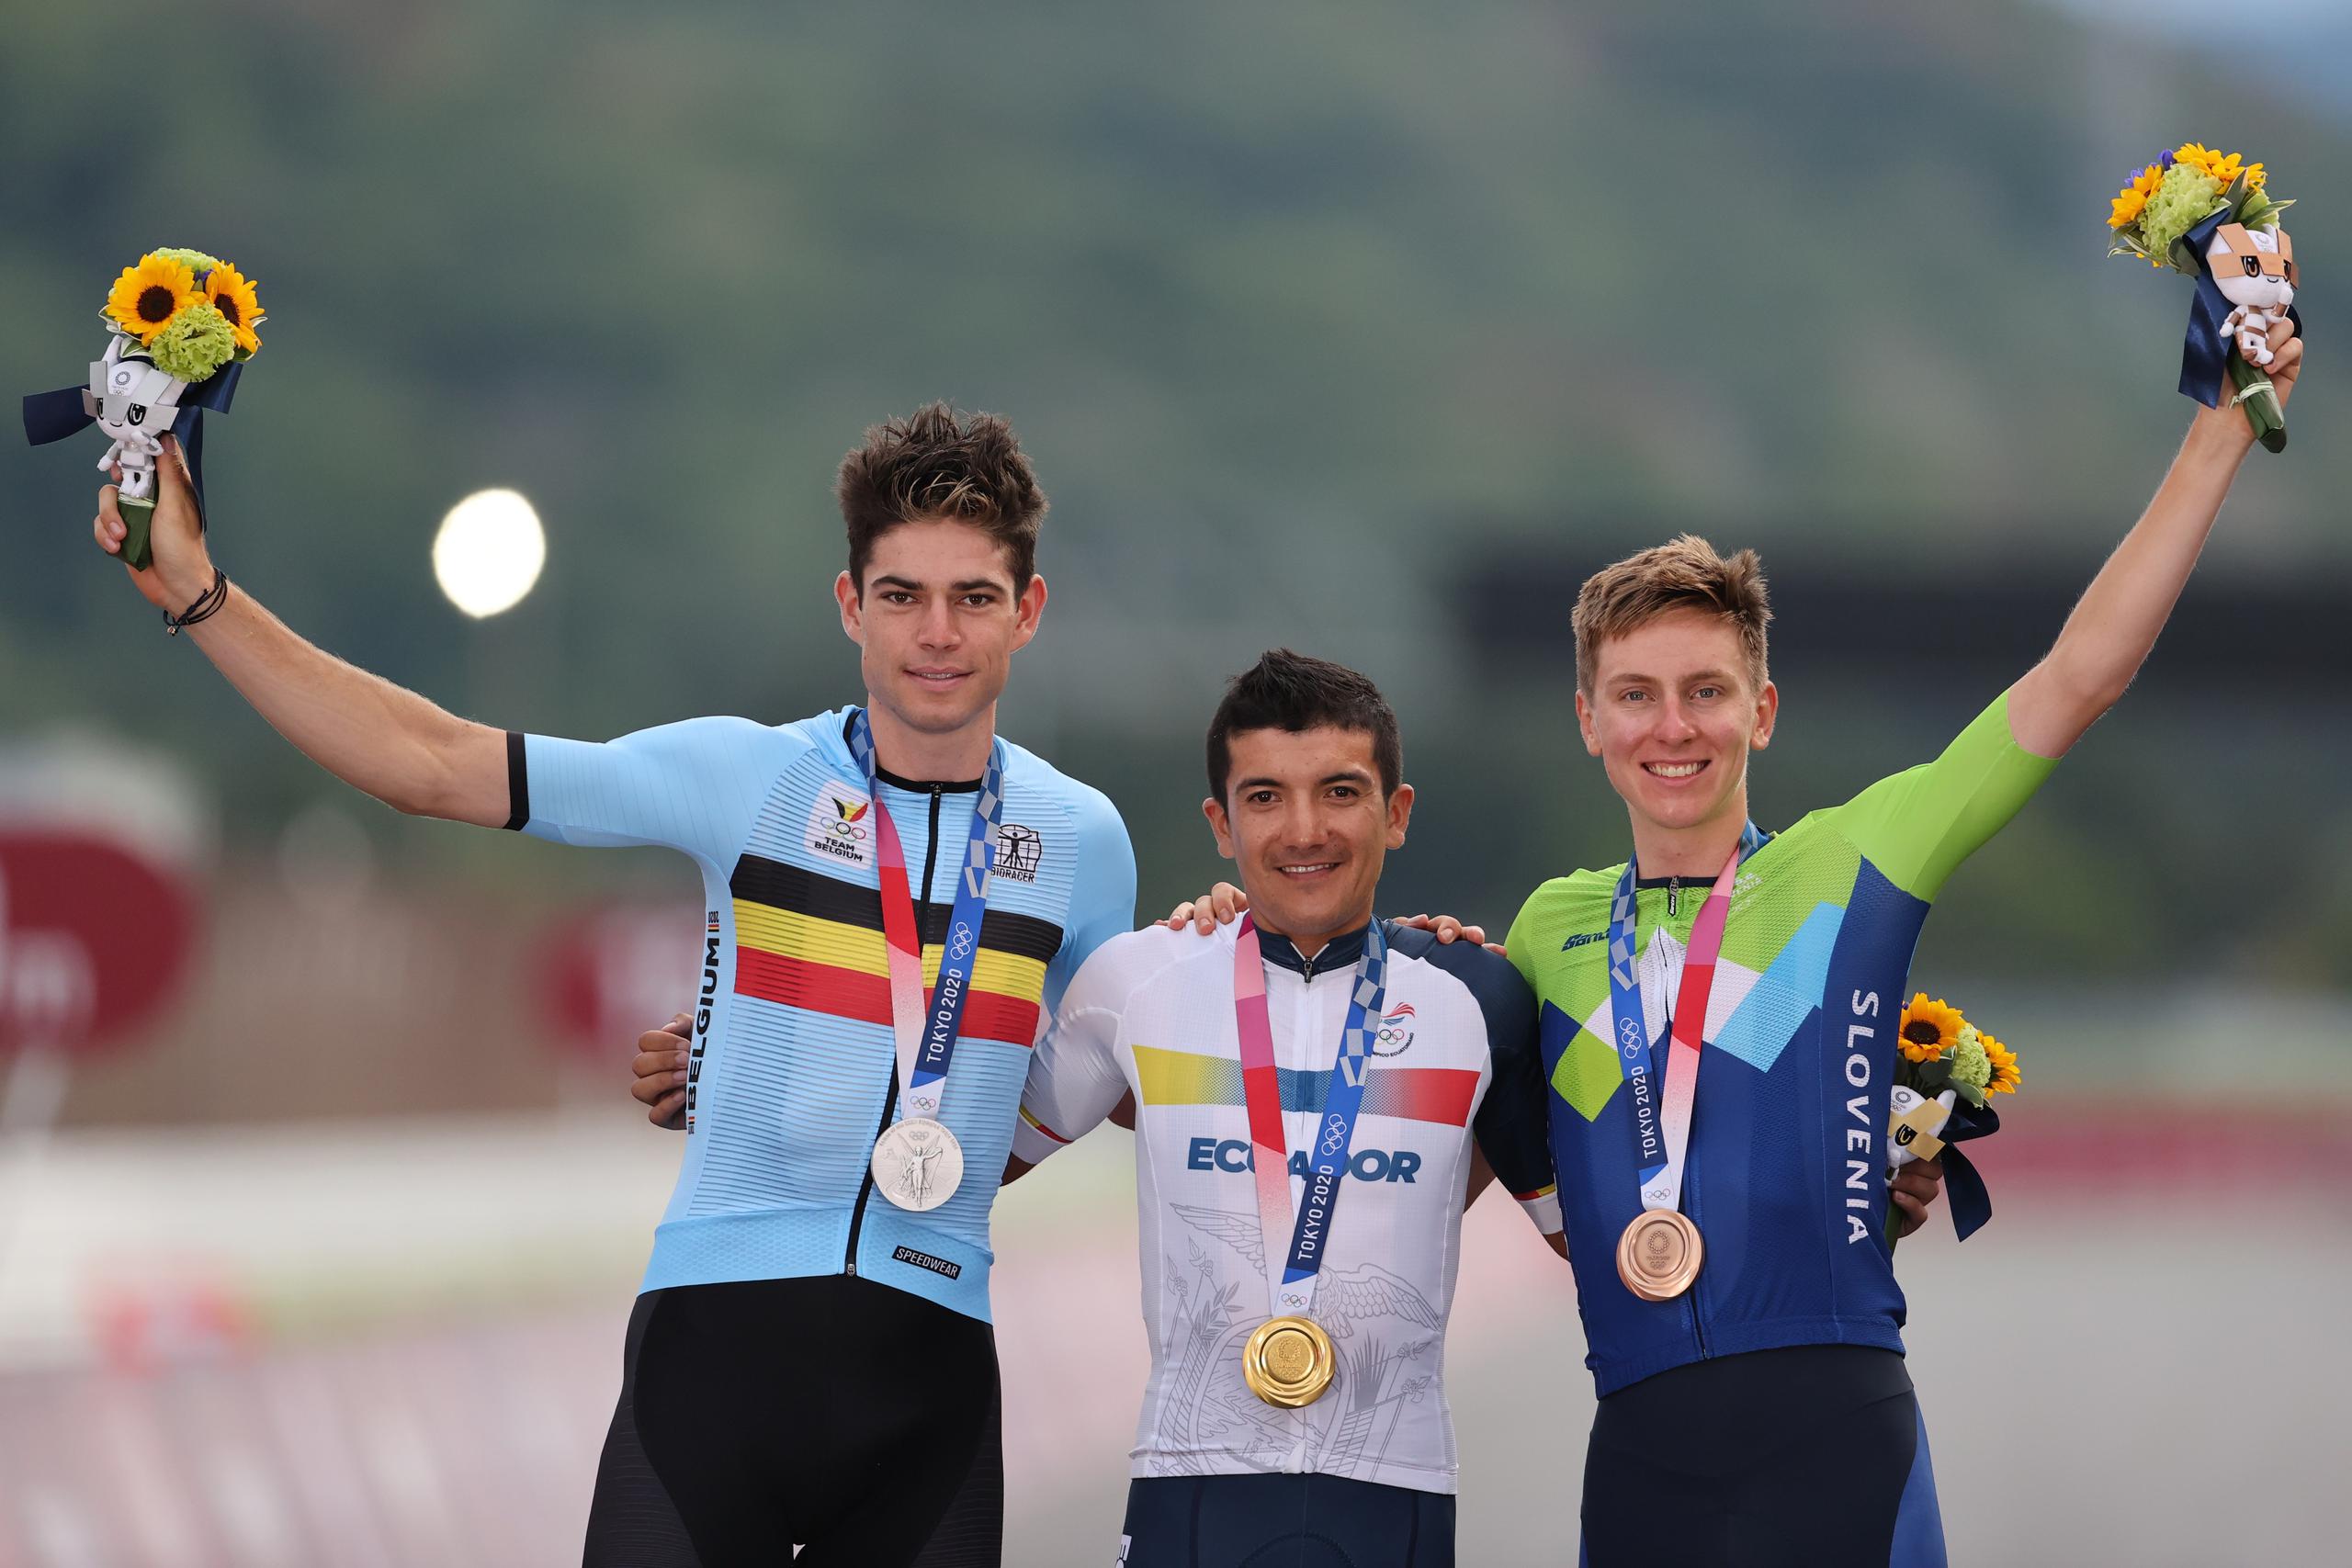 El ecuatoriano Richard Carapaz, al centro, posa con la medalla de oro junto al belga Wout Van Aert (izquierda), quien ganó plata, y el esloveno Tadei Pogacar, quien se colgó la de bronce.